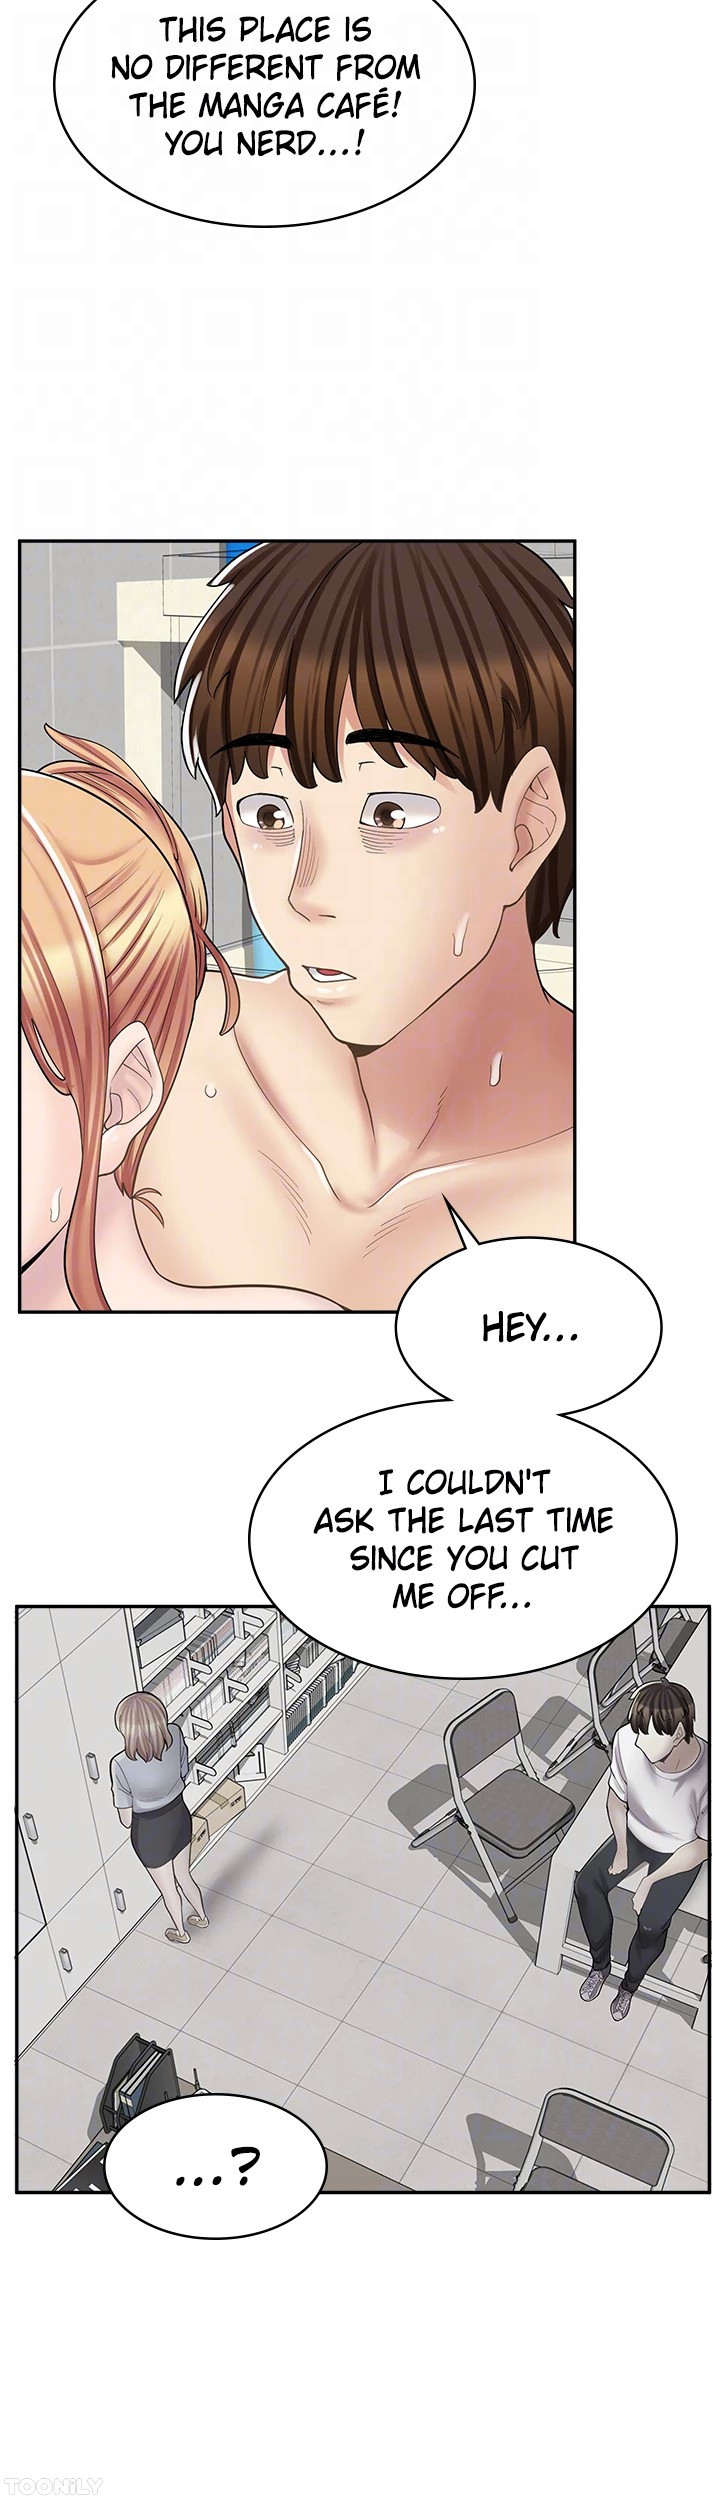 The image Erotic Manga Café Girls - Chapter 20 - 39c632ef5296894714 - ManhwaManga.io